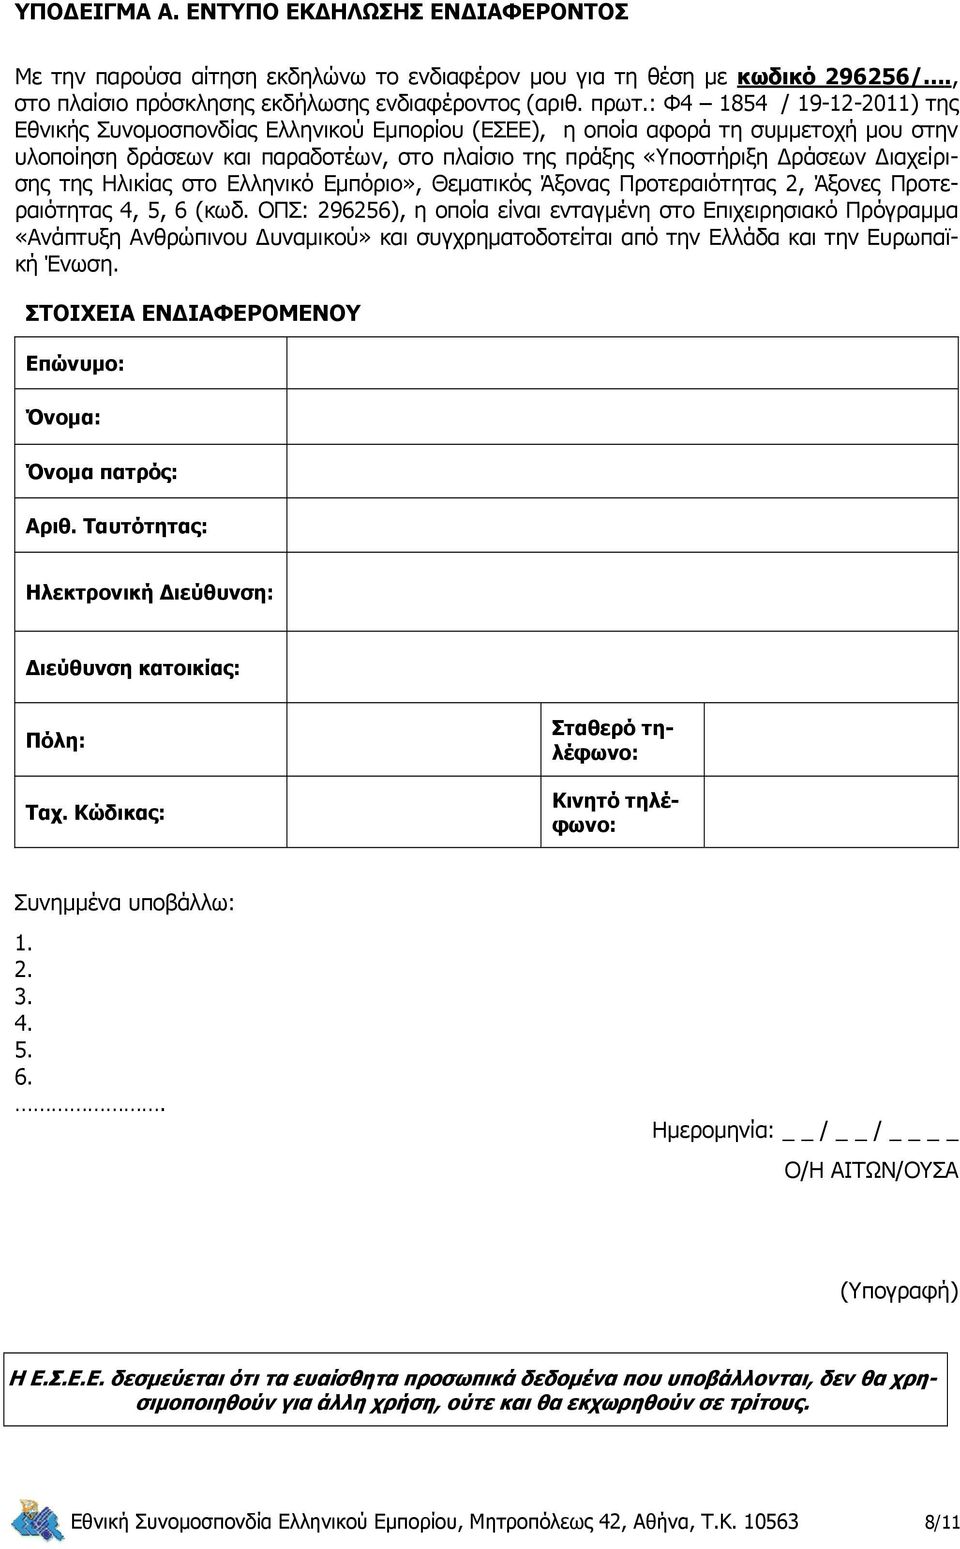 Διαχείρισης της Ηλικίας στο Ελληνικό Εμπόριο», Θεματικός Άξονας Προτεραιότητας 2, Άξονες Προτεραιότητας 4, 5, 6 (κωδ.